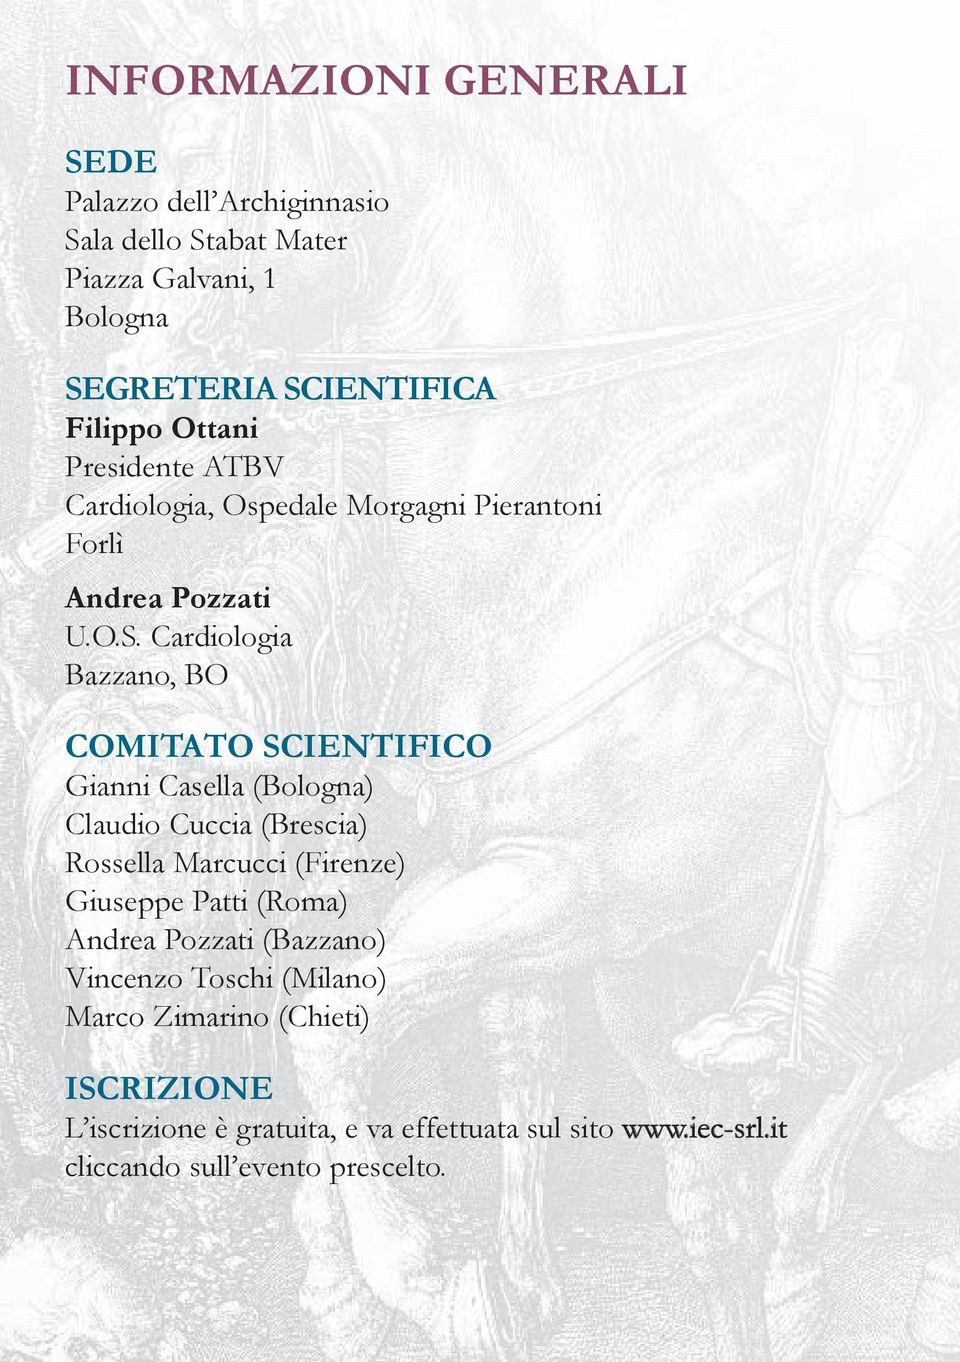 Cardiologia Bazzano, BO COMITATO SCIENTIFICO Gianni Casella (Bologna) Claudio Cuccia (Brescia) Rossella Marcucci (Firenze) Giuseppe Patti